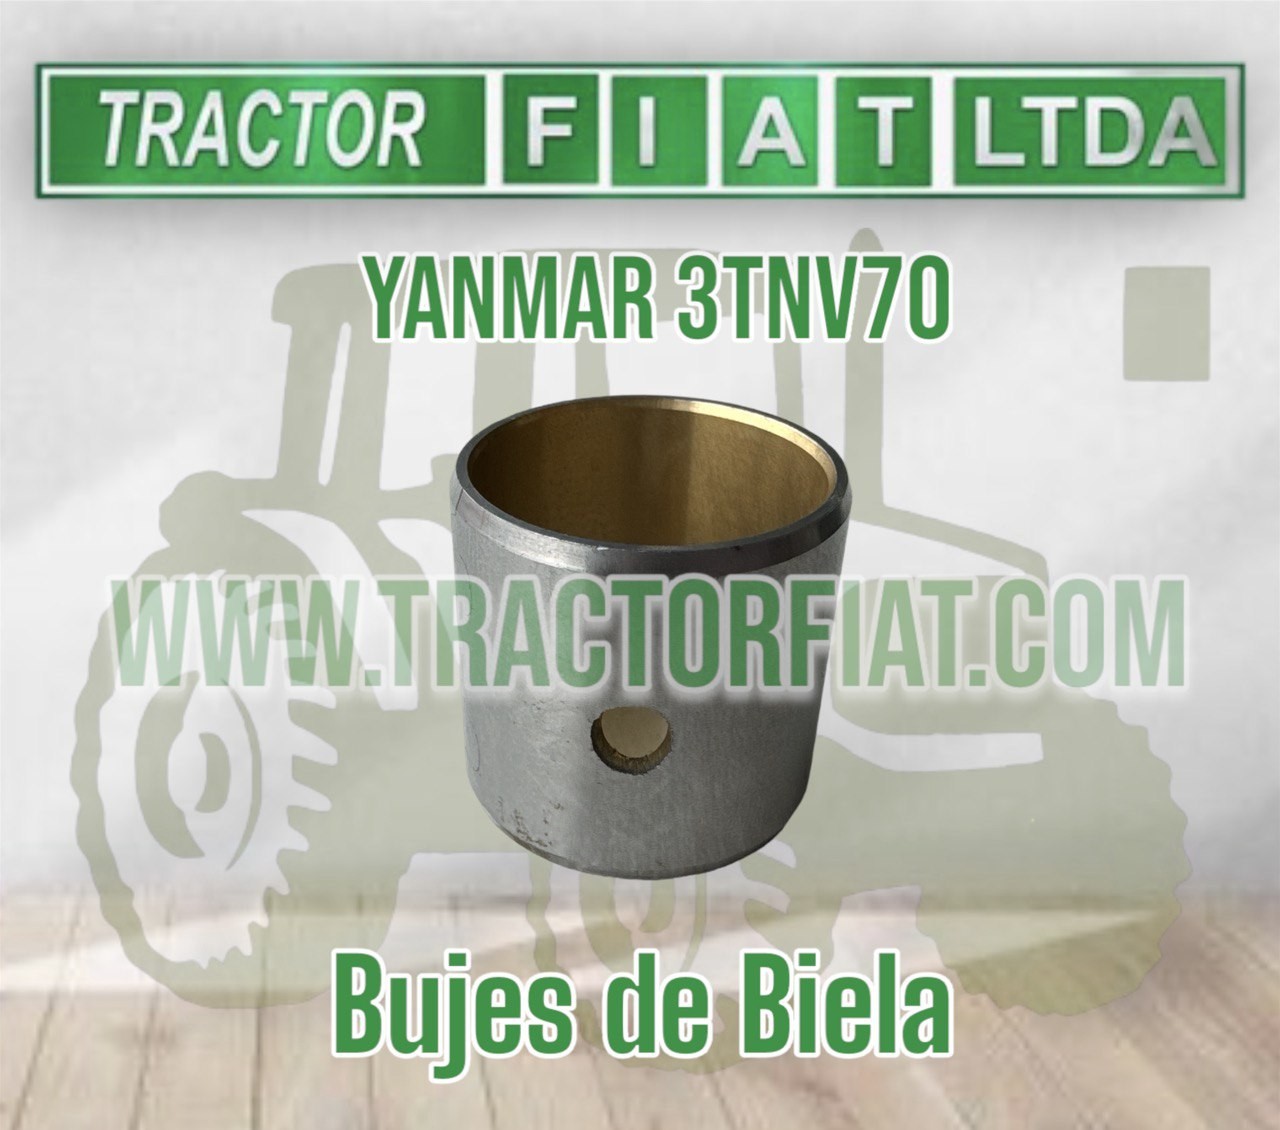 BUJES DE BIELA - MOTOR YANMAR 3TNV70